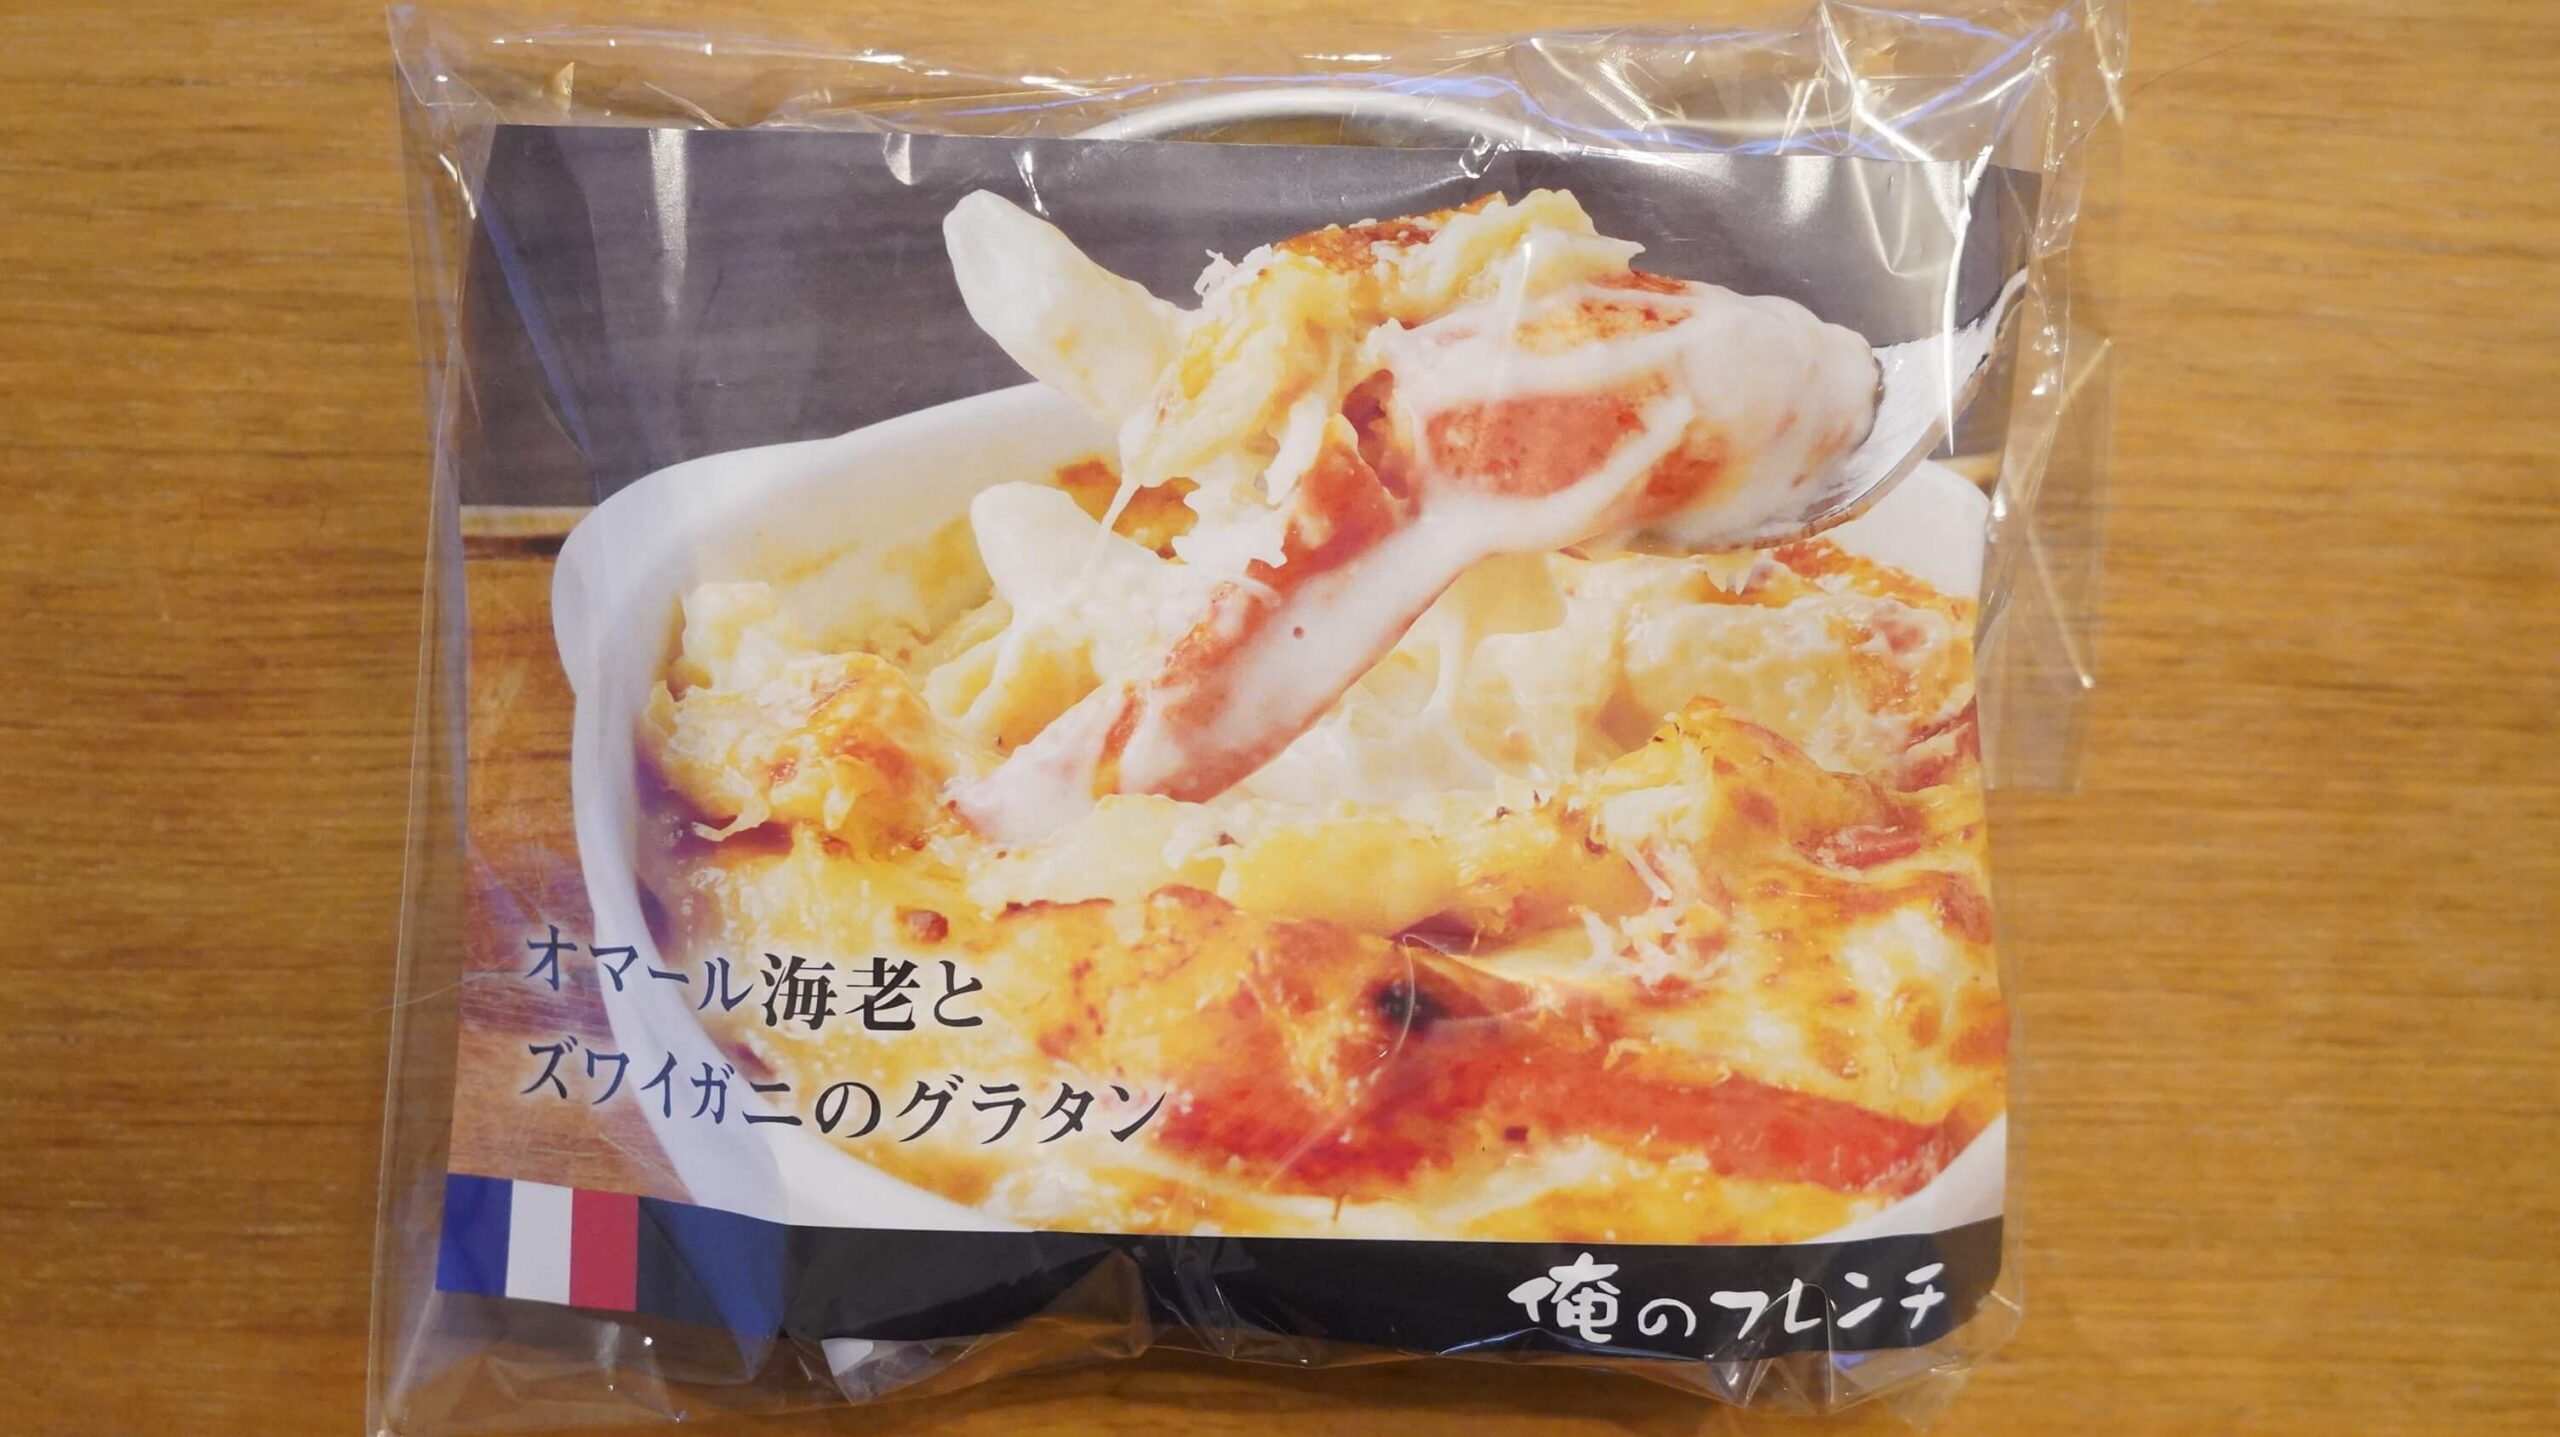 俺のフレンチの冷凍食品「オマール海老とズワイガニのペンネグラタン」のパッケージ写真